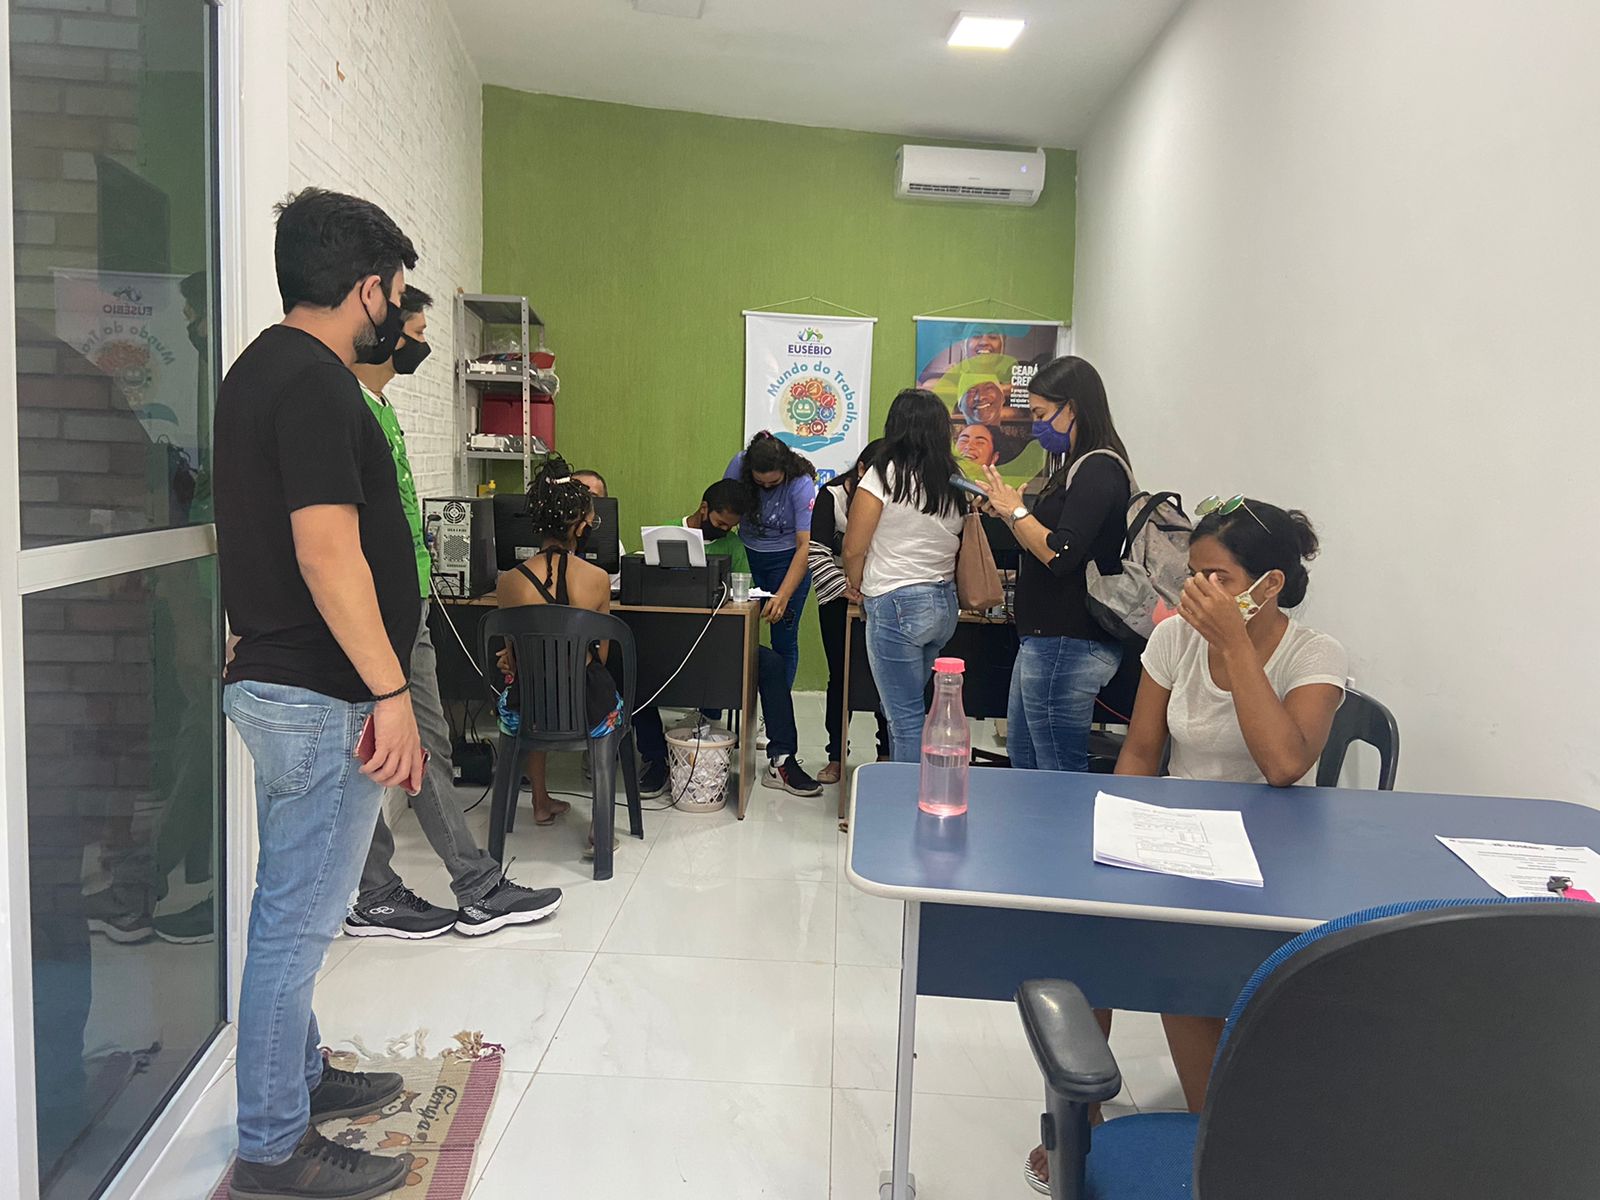 Sala do empreendedor cadastra 215 microempreendedores no programa Ceará Credi